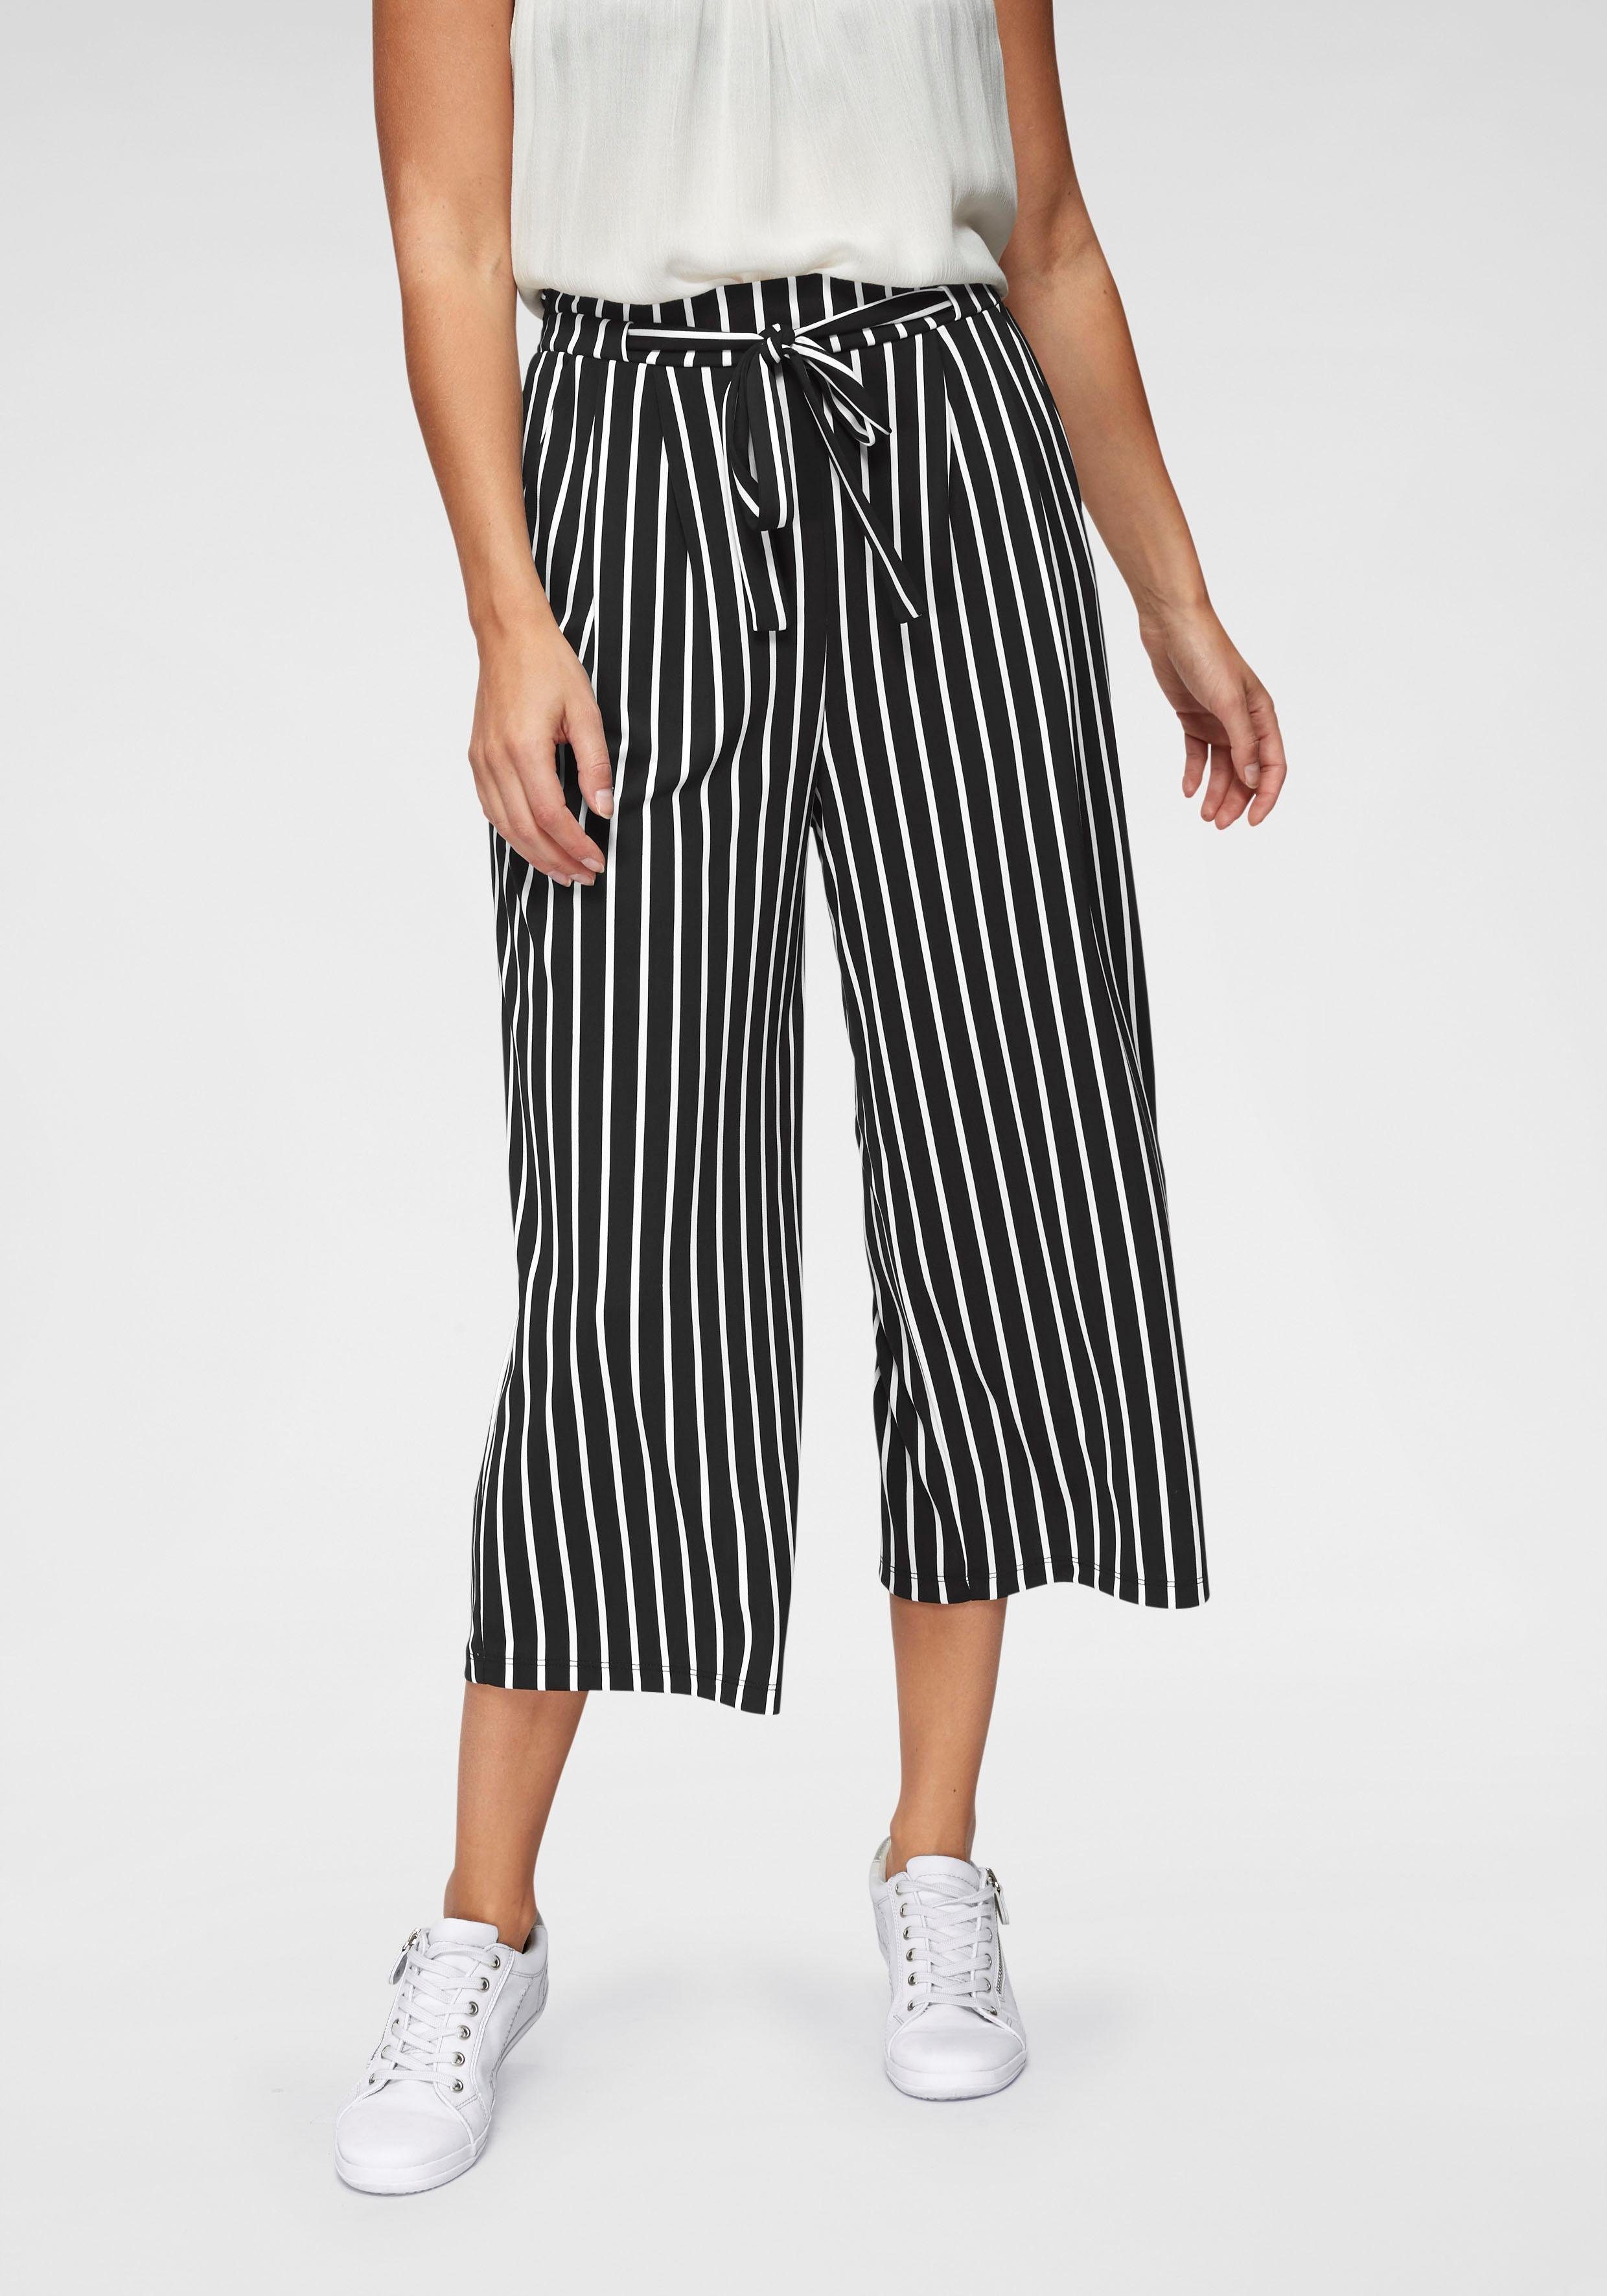 Culotte-Hosen – shoppe ausgestellte Hosen bei COUTURISTA